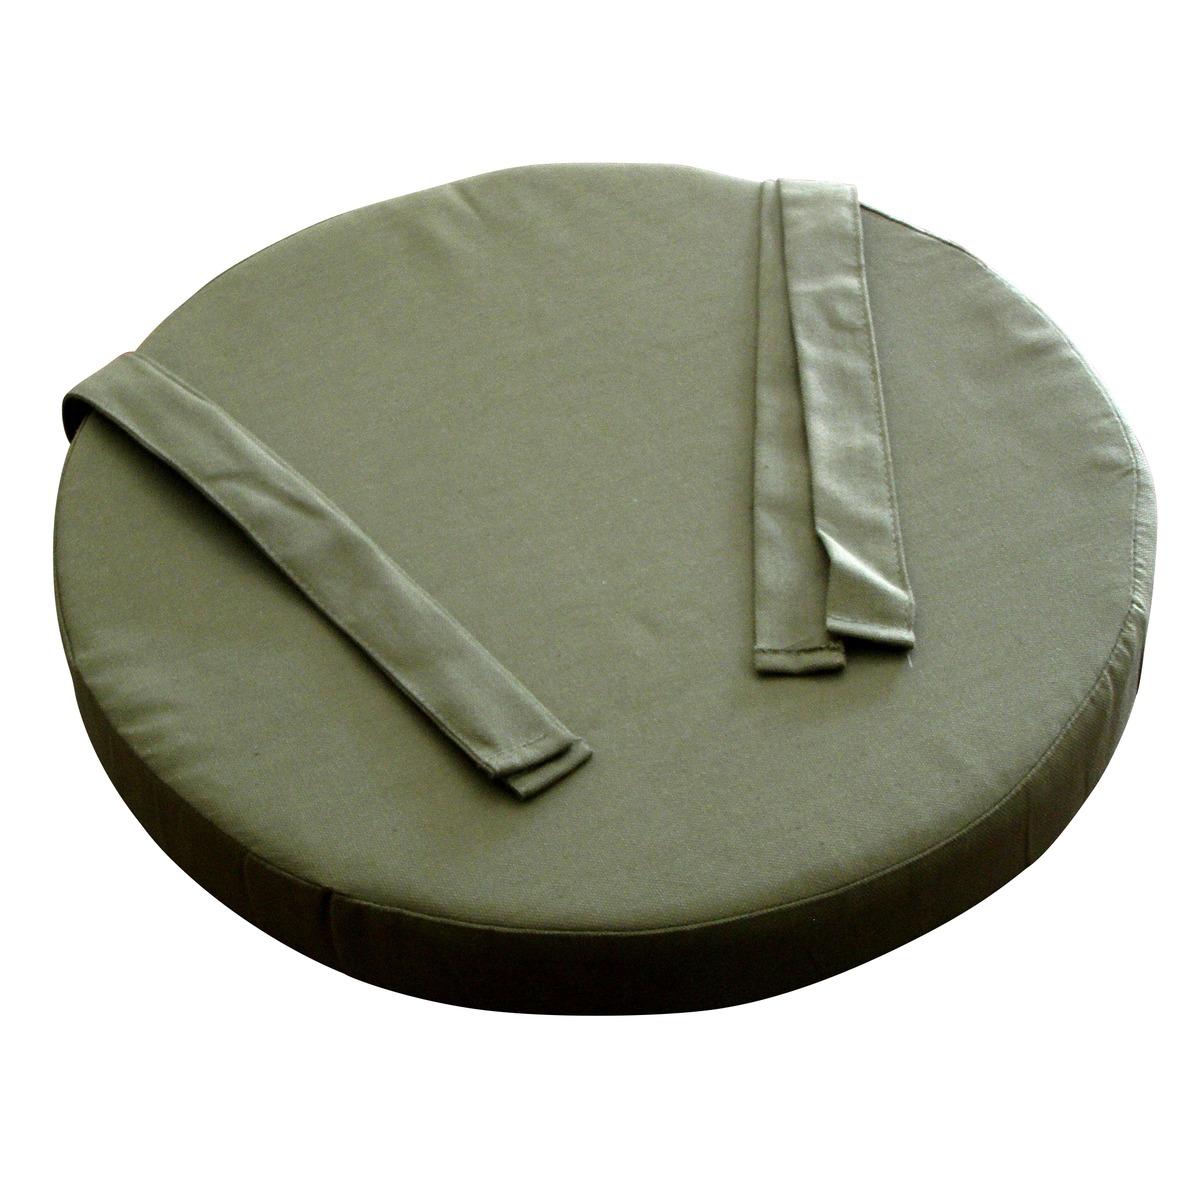 Galette de chaise collection Panama 100 % coton - Diam. 40 x 5 cm - Vert kaki